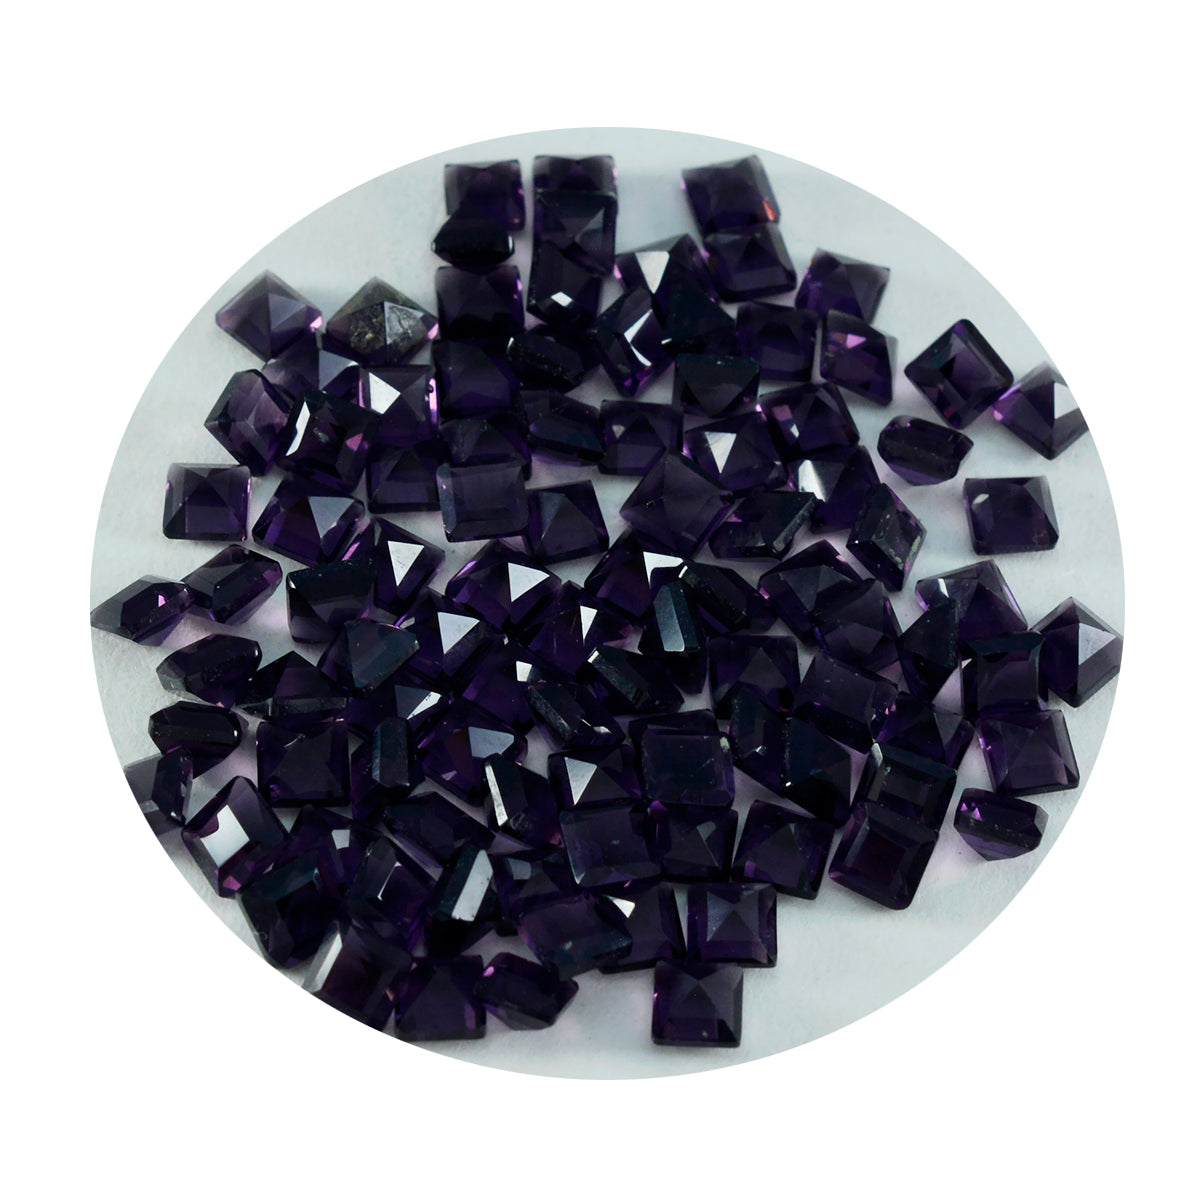 Riyogems 1 Stück violetter Amethyst mit CZ, facettiert, 4 x 4 mm, quadratische Form, verblüffende Qualität, loser Edelstein